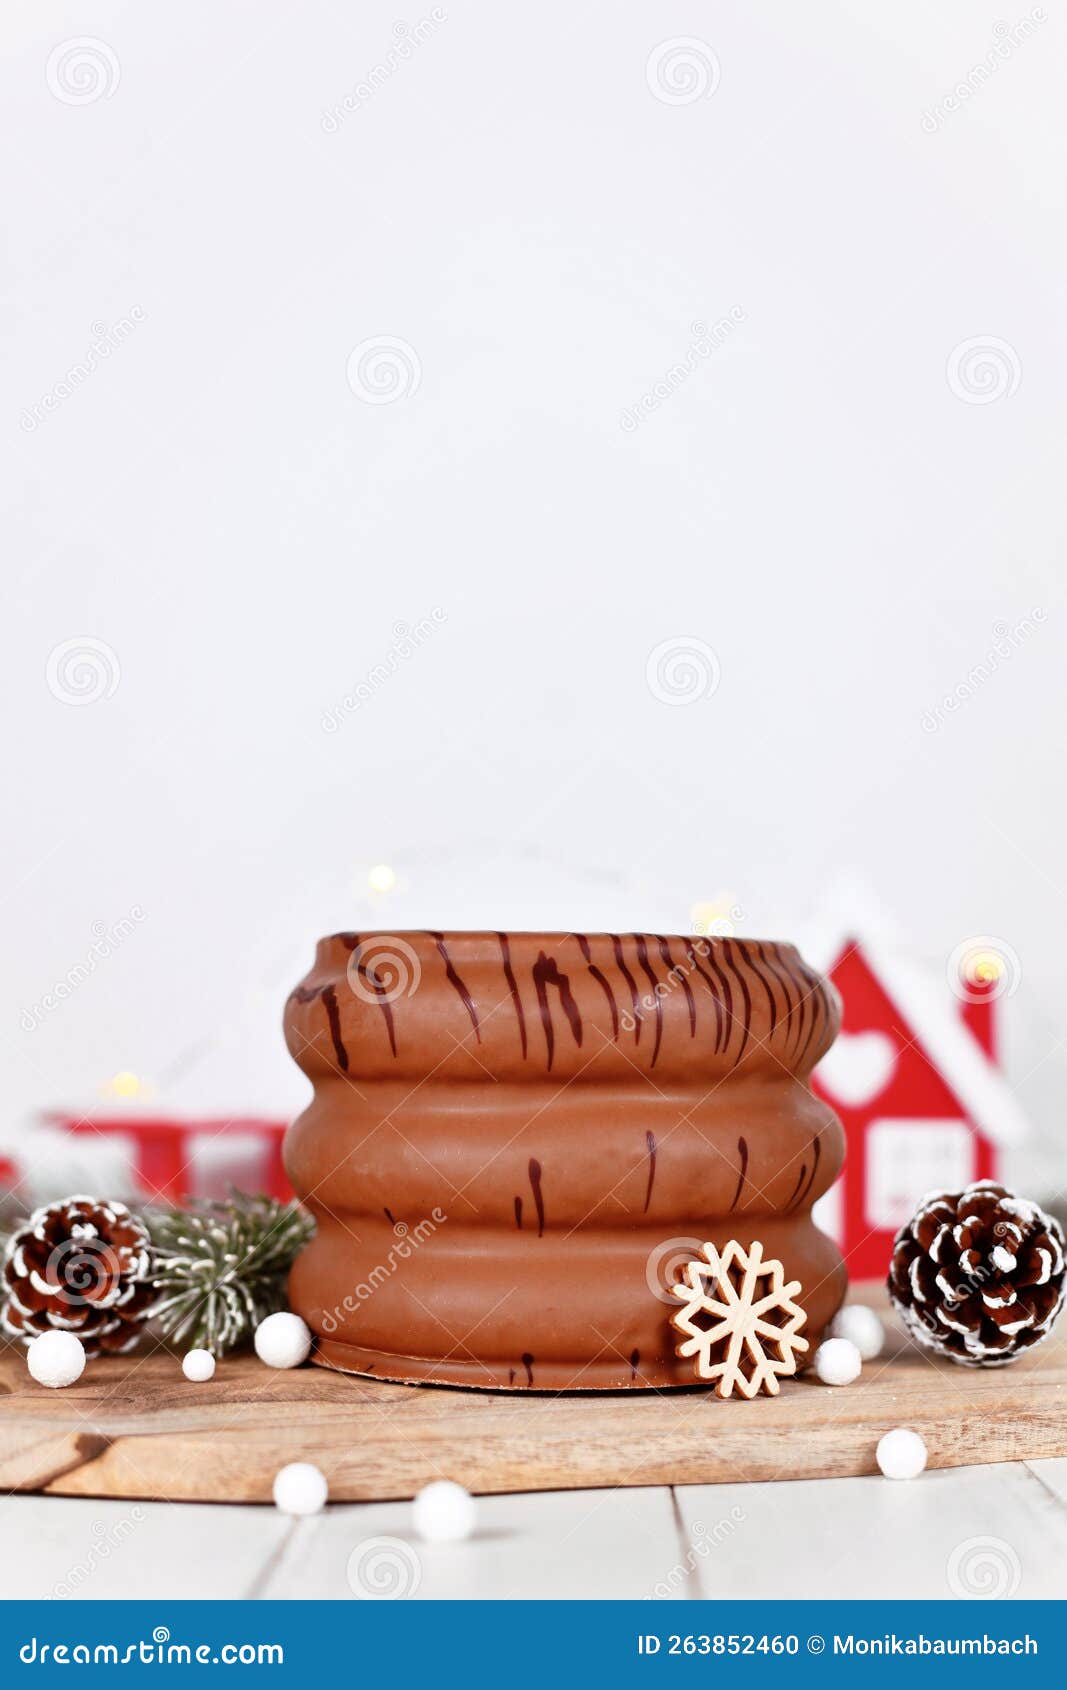 Baumkuchen - Gâteau au Chocolat